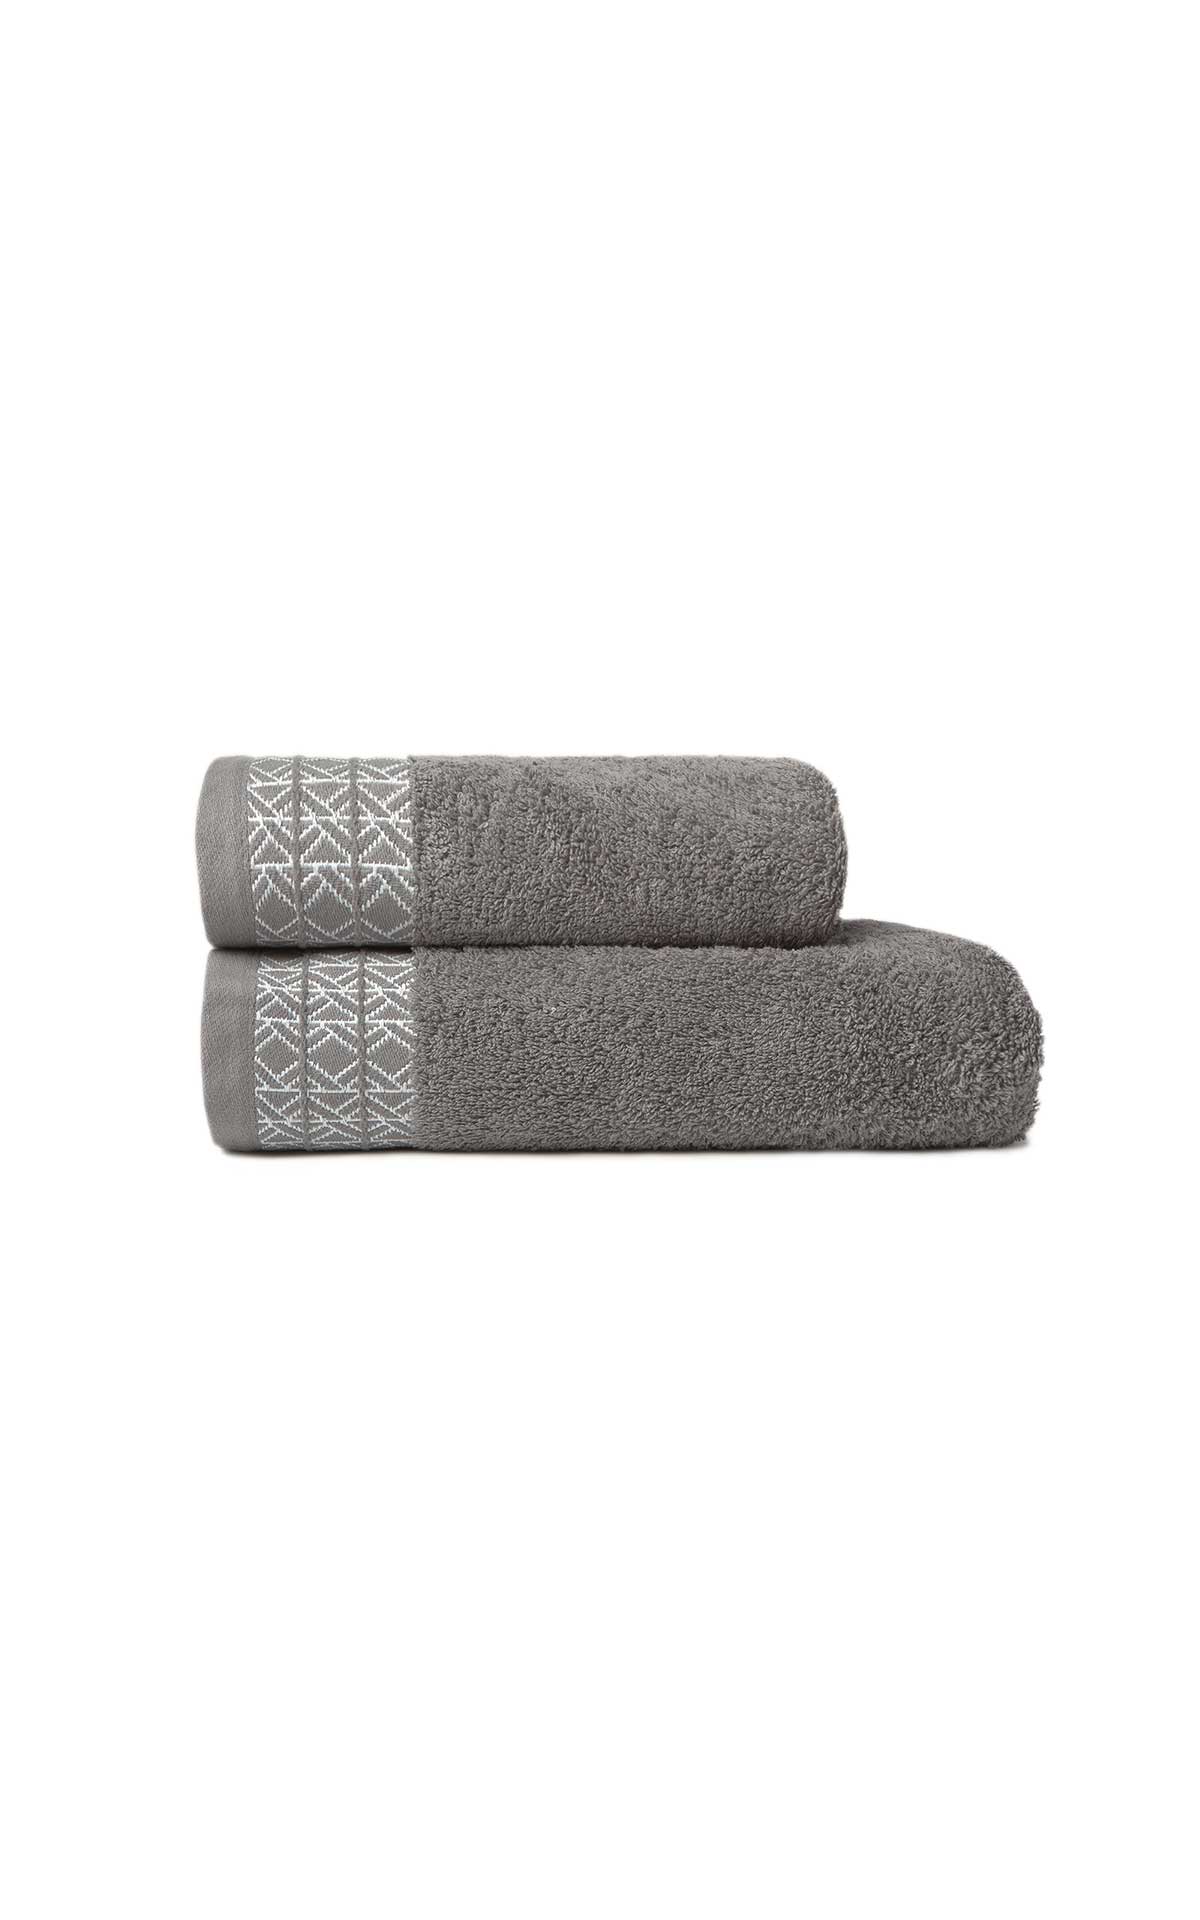 Set 2 grey towels Textura